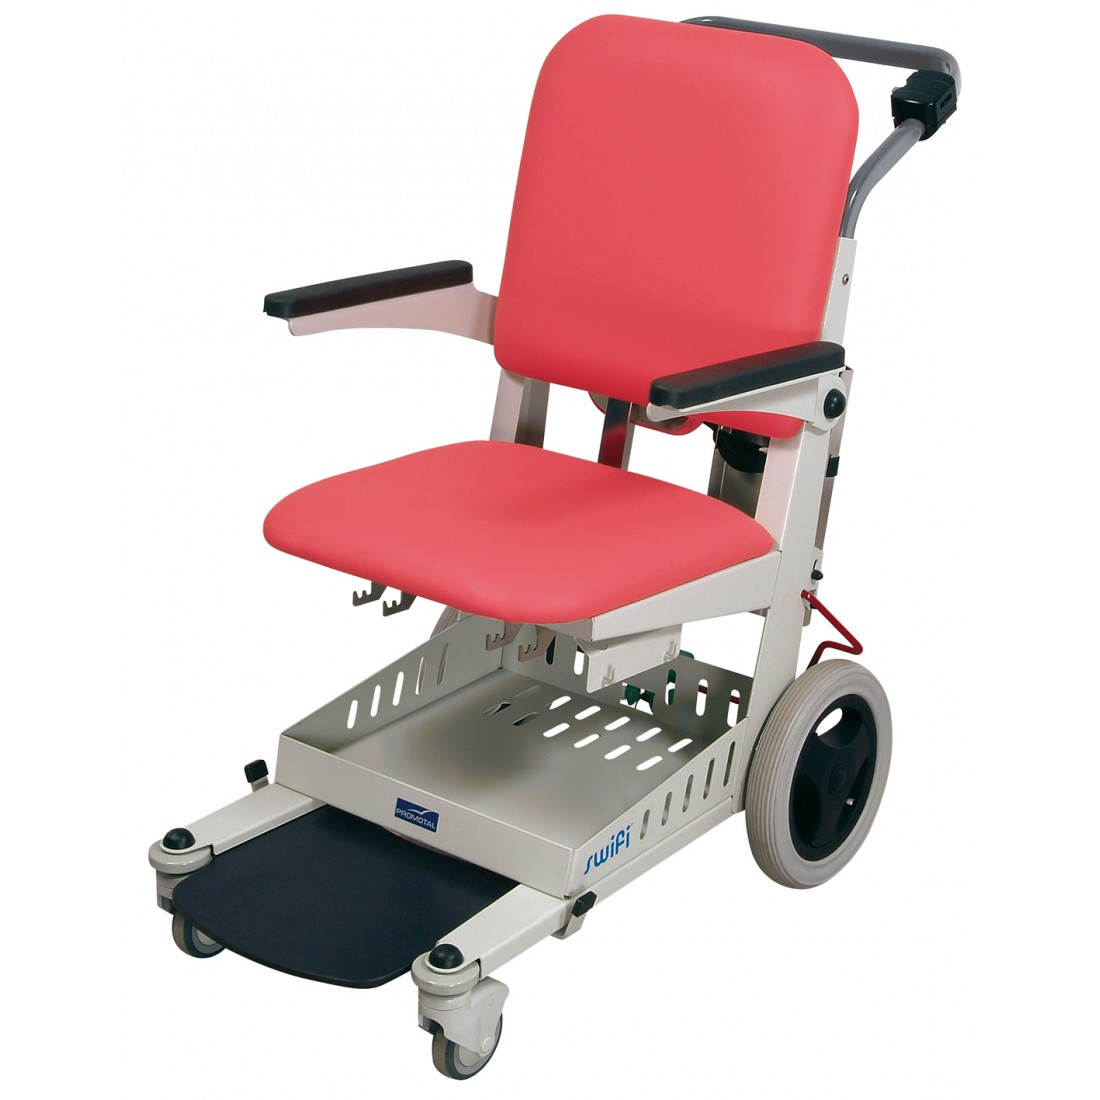 Patiëntenstoel SWIFI - breedte zitting 47 cm - roze - 1 st